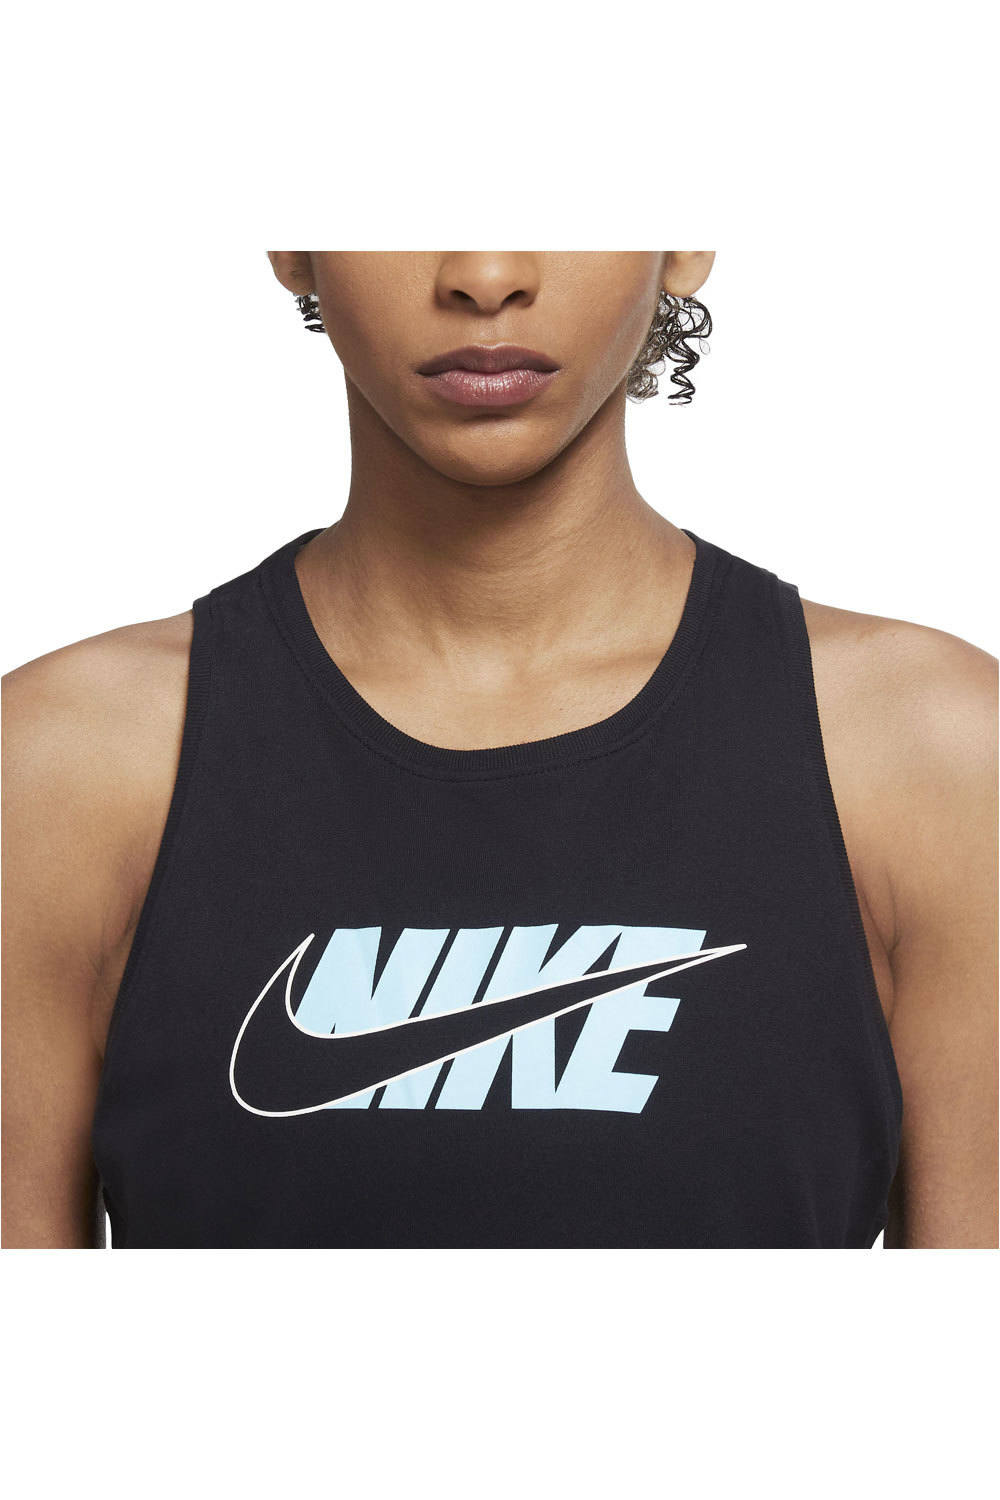 Nike camiseta tirantes fitness mujer W NK DF TANK ICON CLASH NE vista detalle